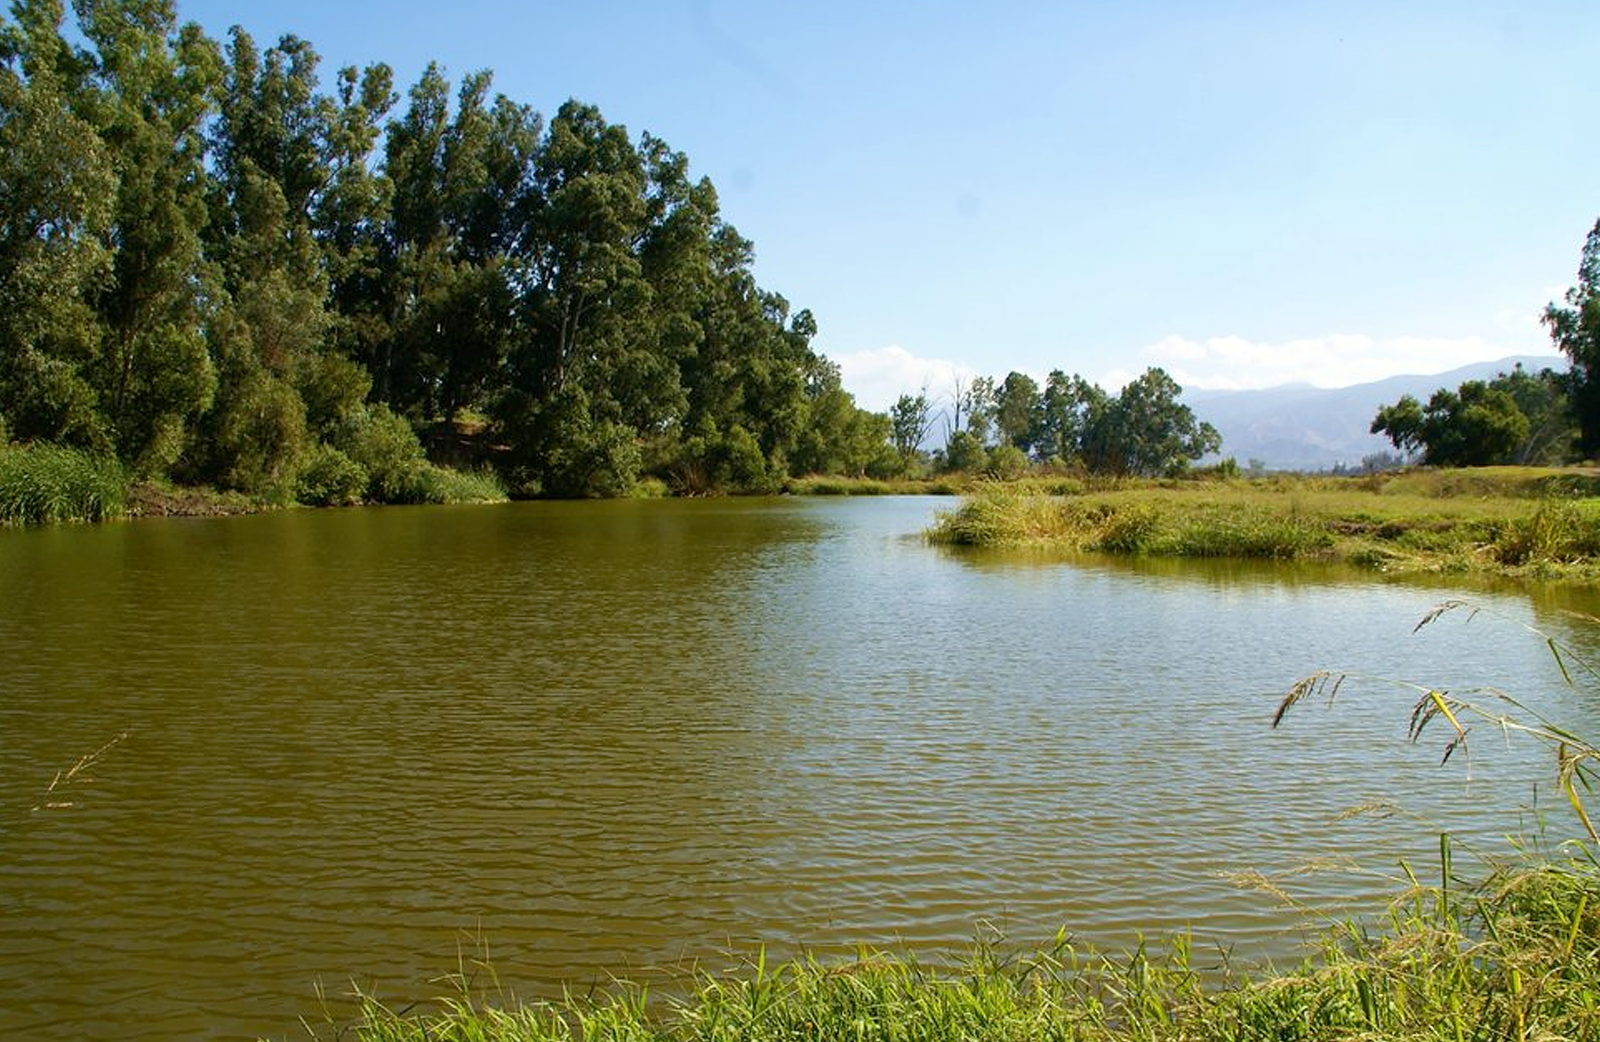 The dog lake at the Prado dog park.